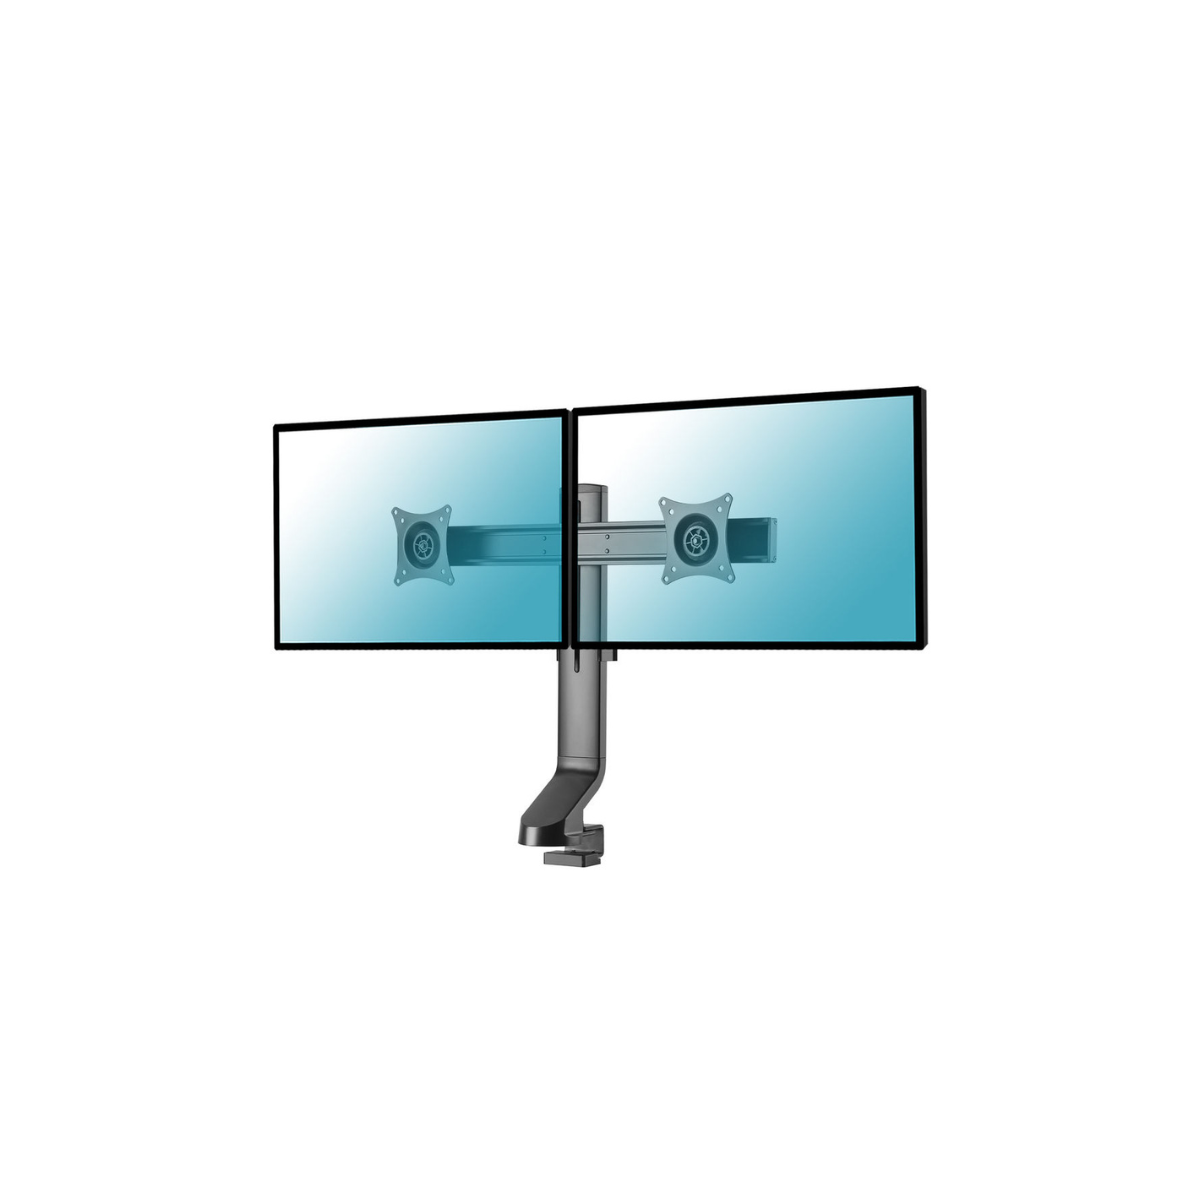 Kimex Support de bureau pour 3 écrans moniteurs PC 13´´-27´´